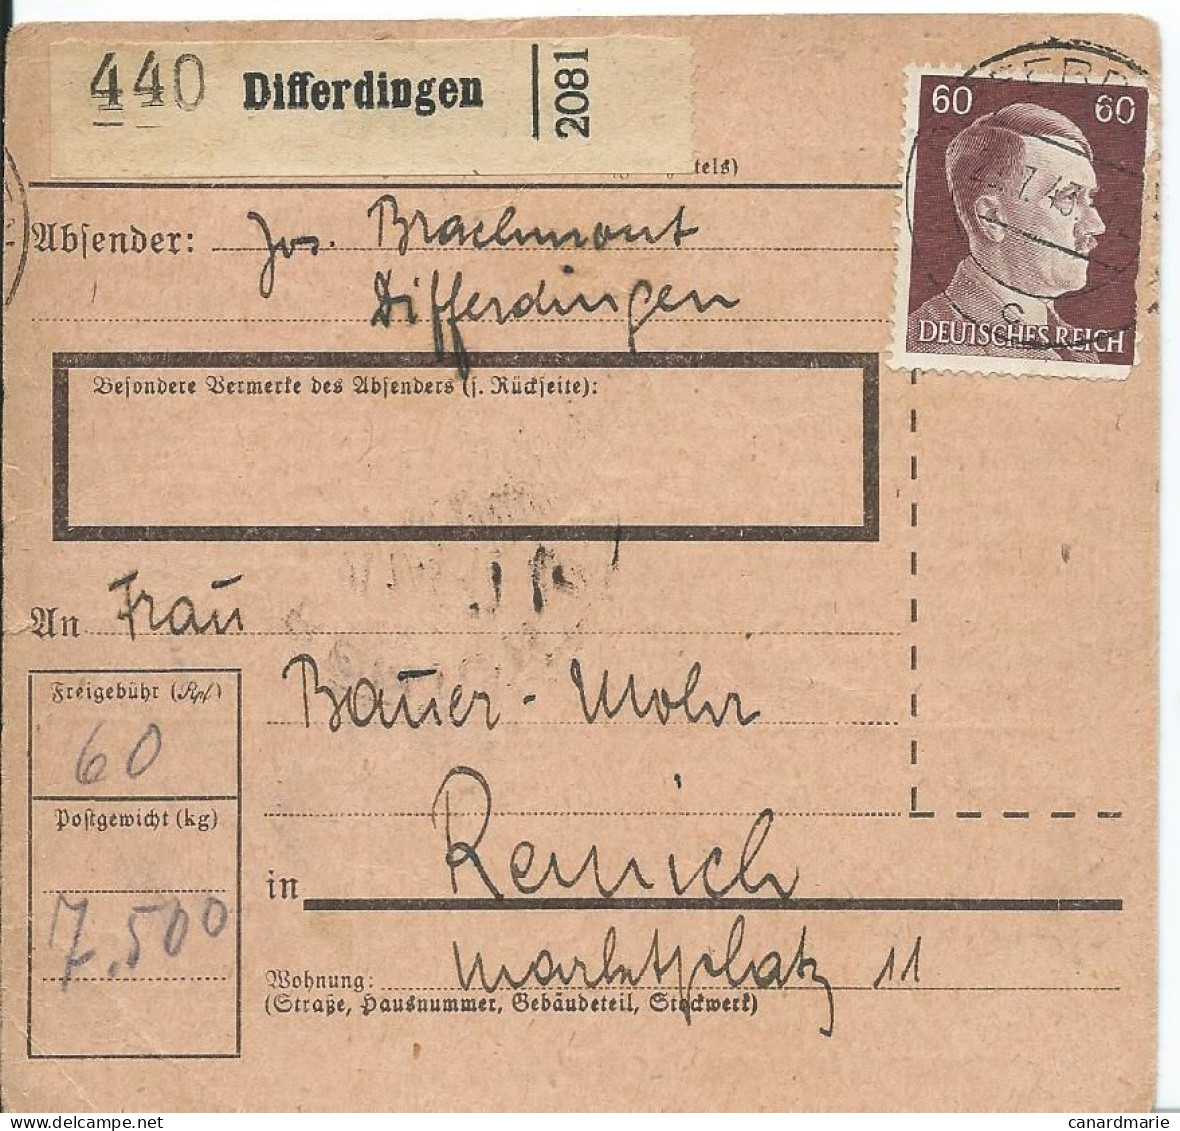 2 BULLETINS DE COLIS POSTAUX 1943/44 AVEC ETIQUETTES DE DIFFERDINGEN - 1940-1944 Occupation Allemande